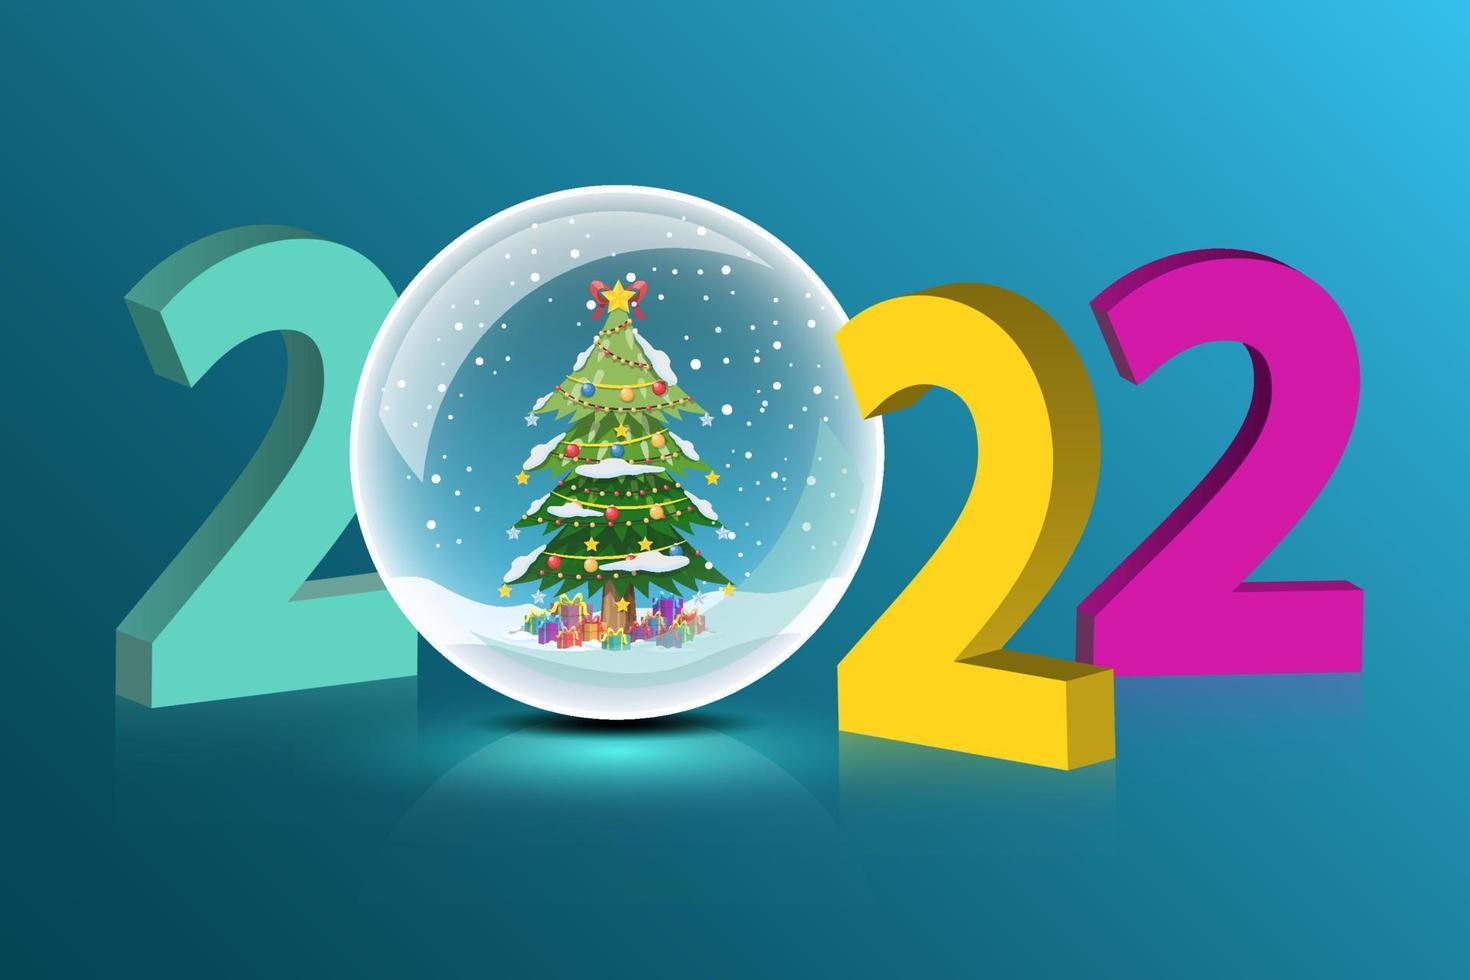 bonne année 2022 avec un arbre de noël enneigé à l'intérieur de la boule de cristal. vecteur